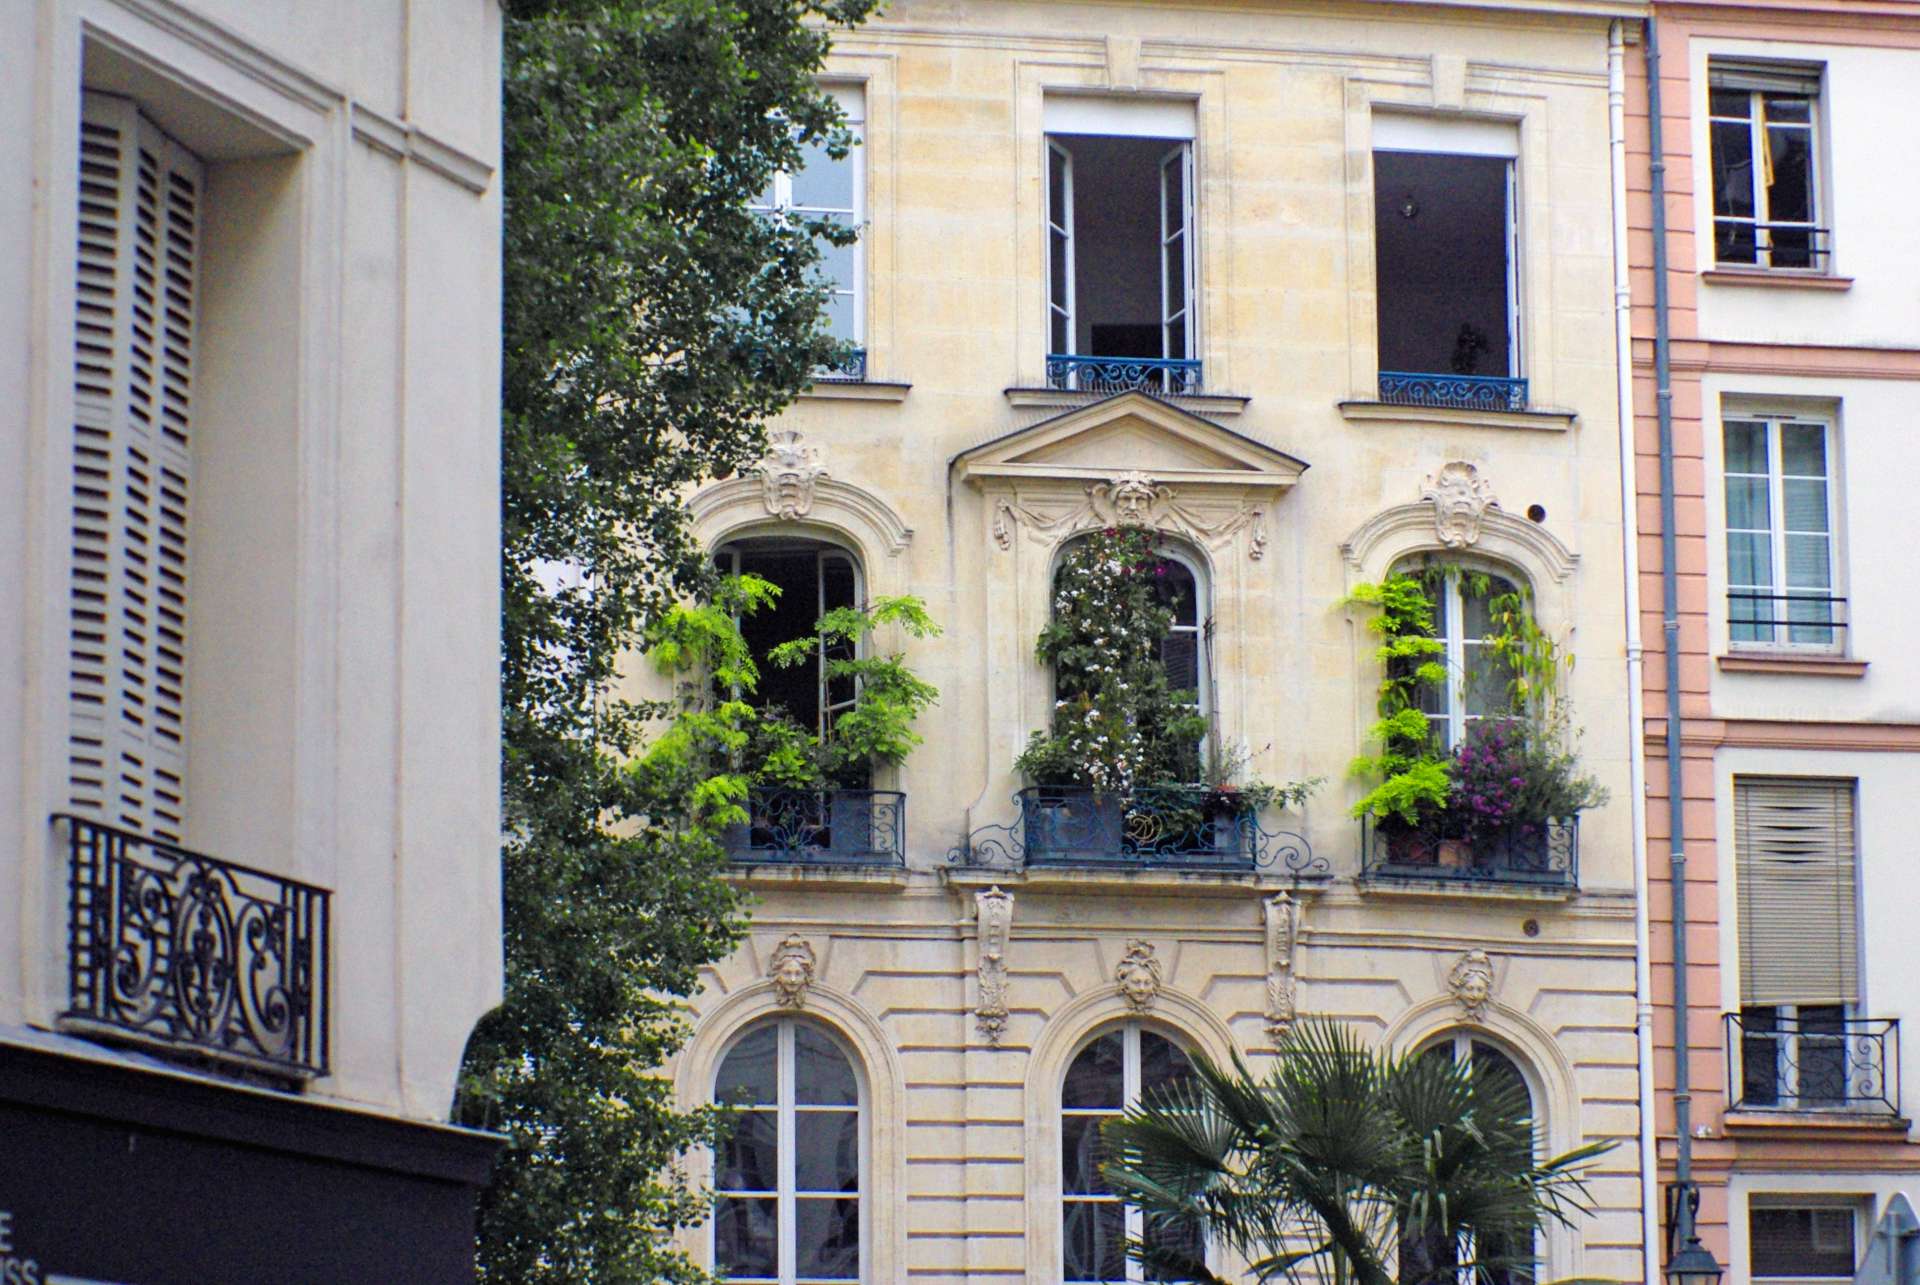 Townhouse in Saint-Germain des Prés copyright French Moments